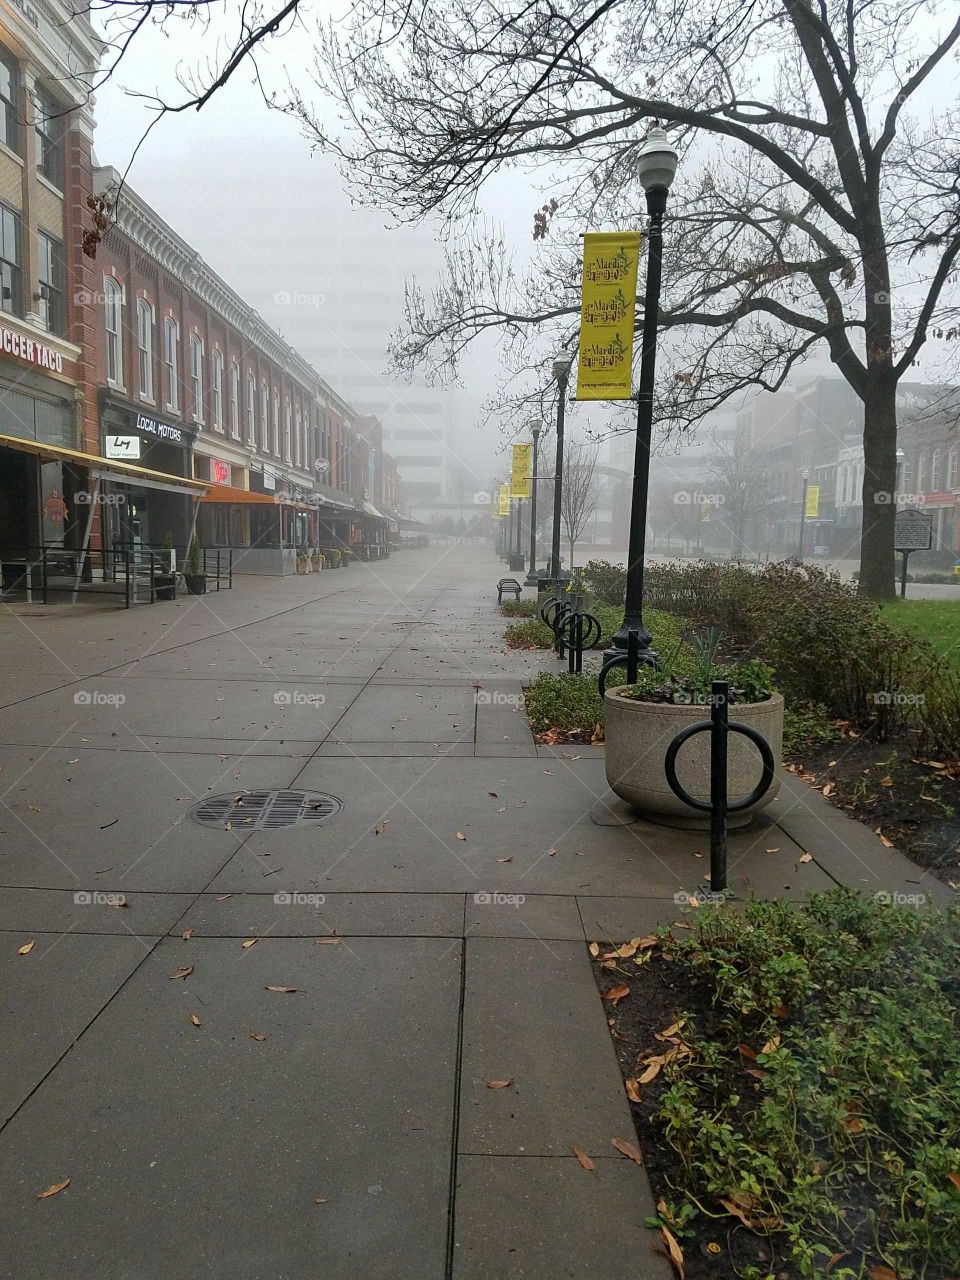 Market square in the rain